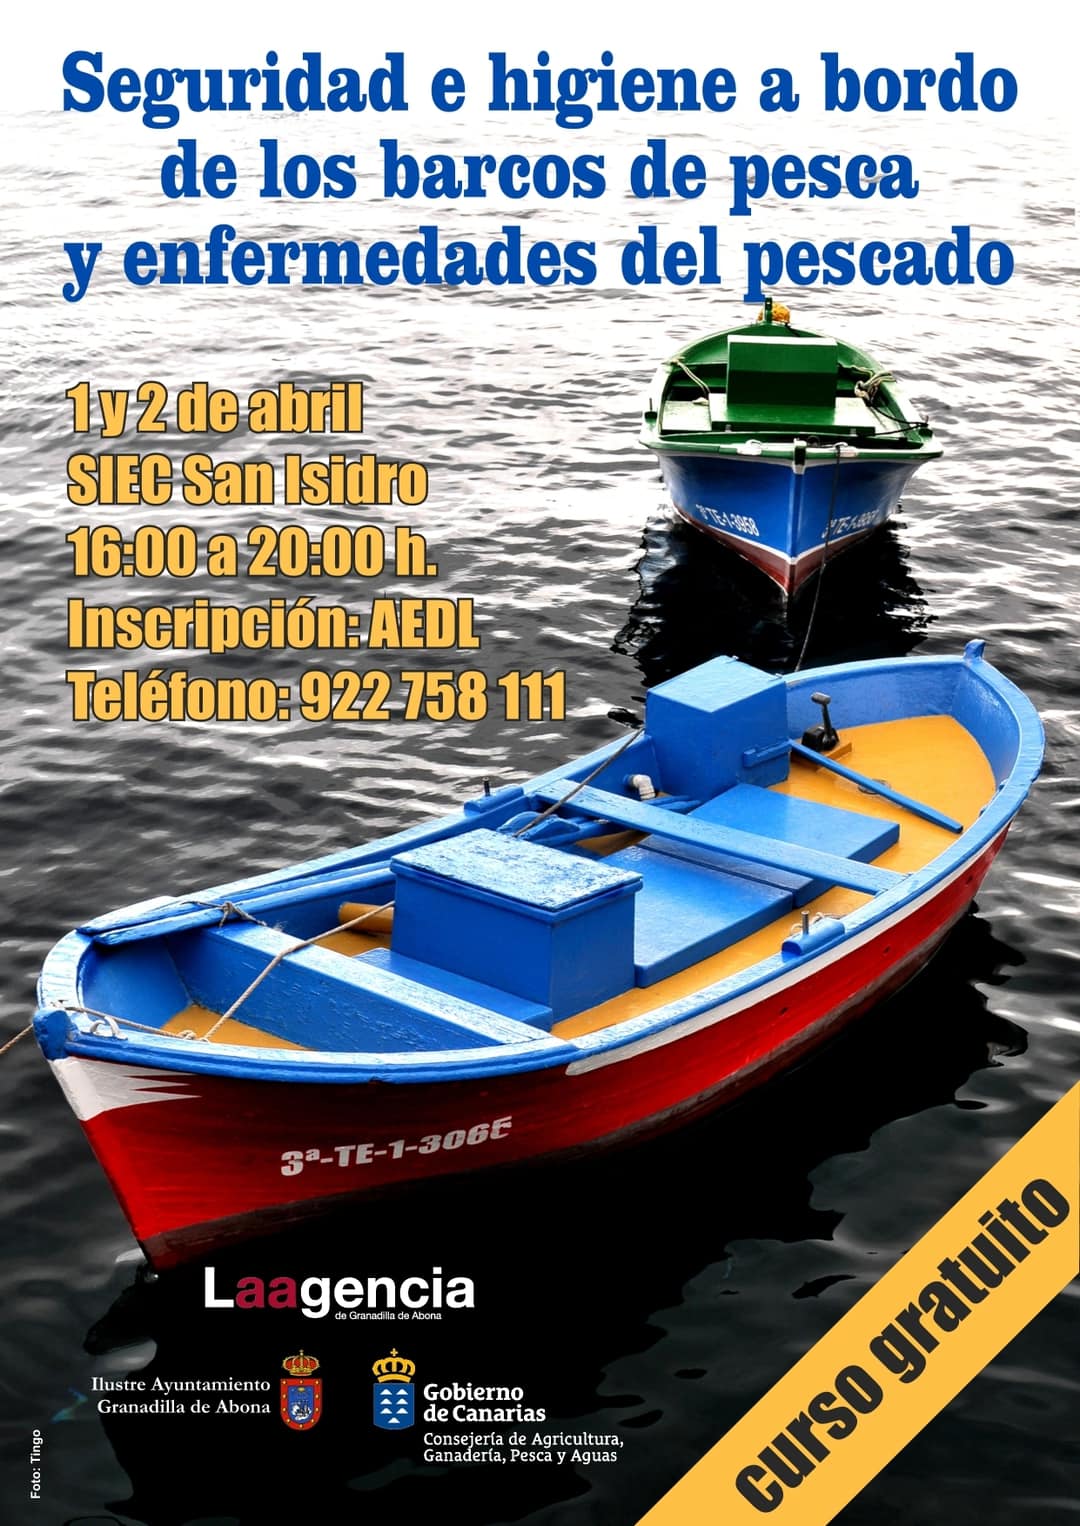 El curso gratuito ‘Seguridad e higiene a bordo de los barcos de pesca y enfermedades del pescado’, este lunes y martes en el SIEC